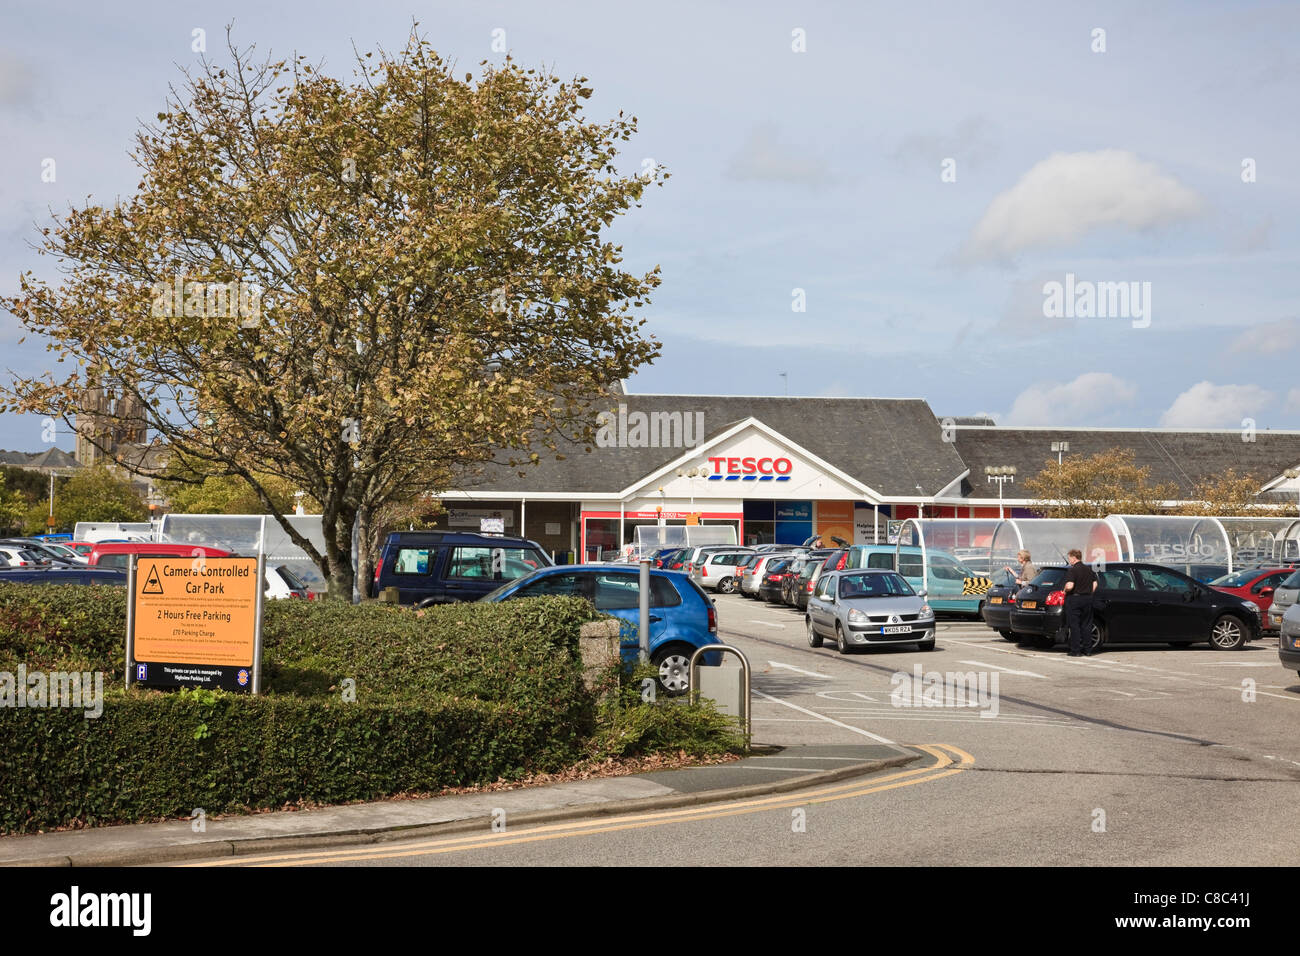 Tesco mit Autos auf dem Parkplatz geparkt. Truro, Cornwall, England, Großbritannien, Großbritannien. Stockfoto